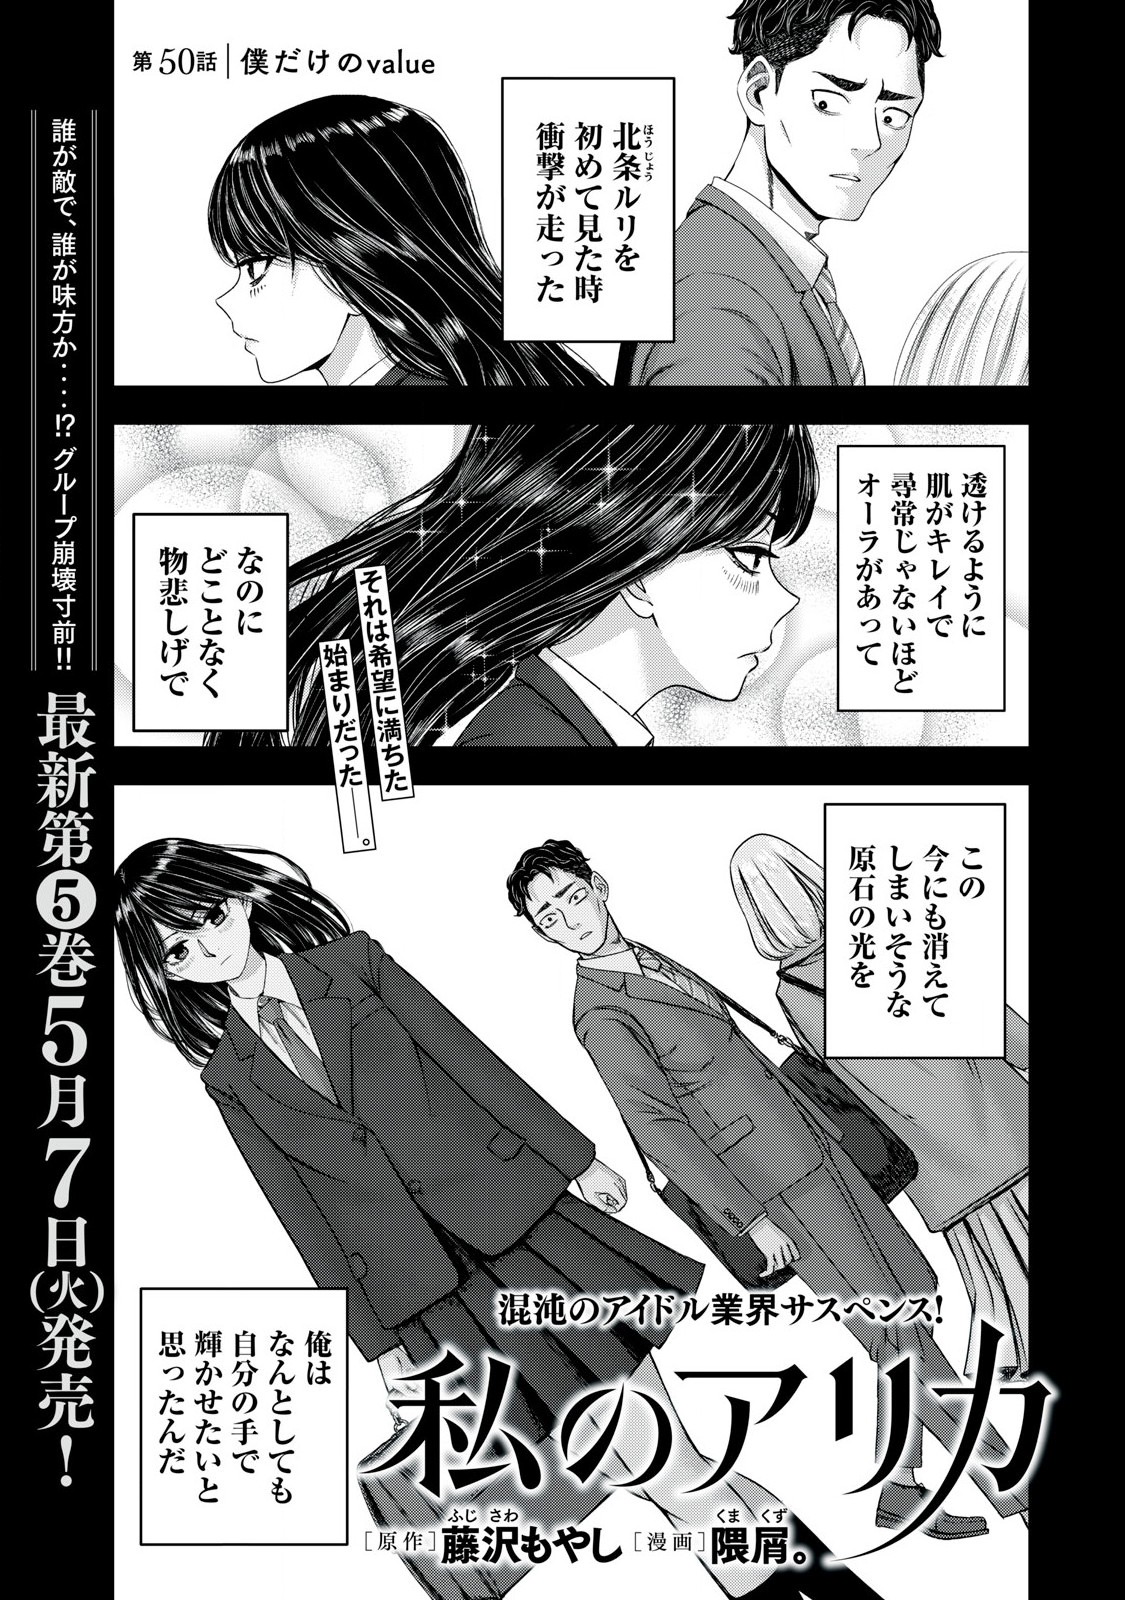 Watashi no Arika - Chapter 50 - Page 1